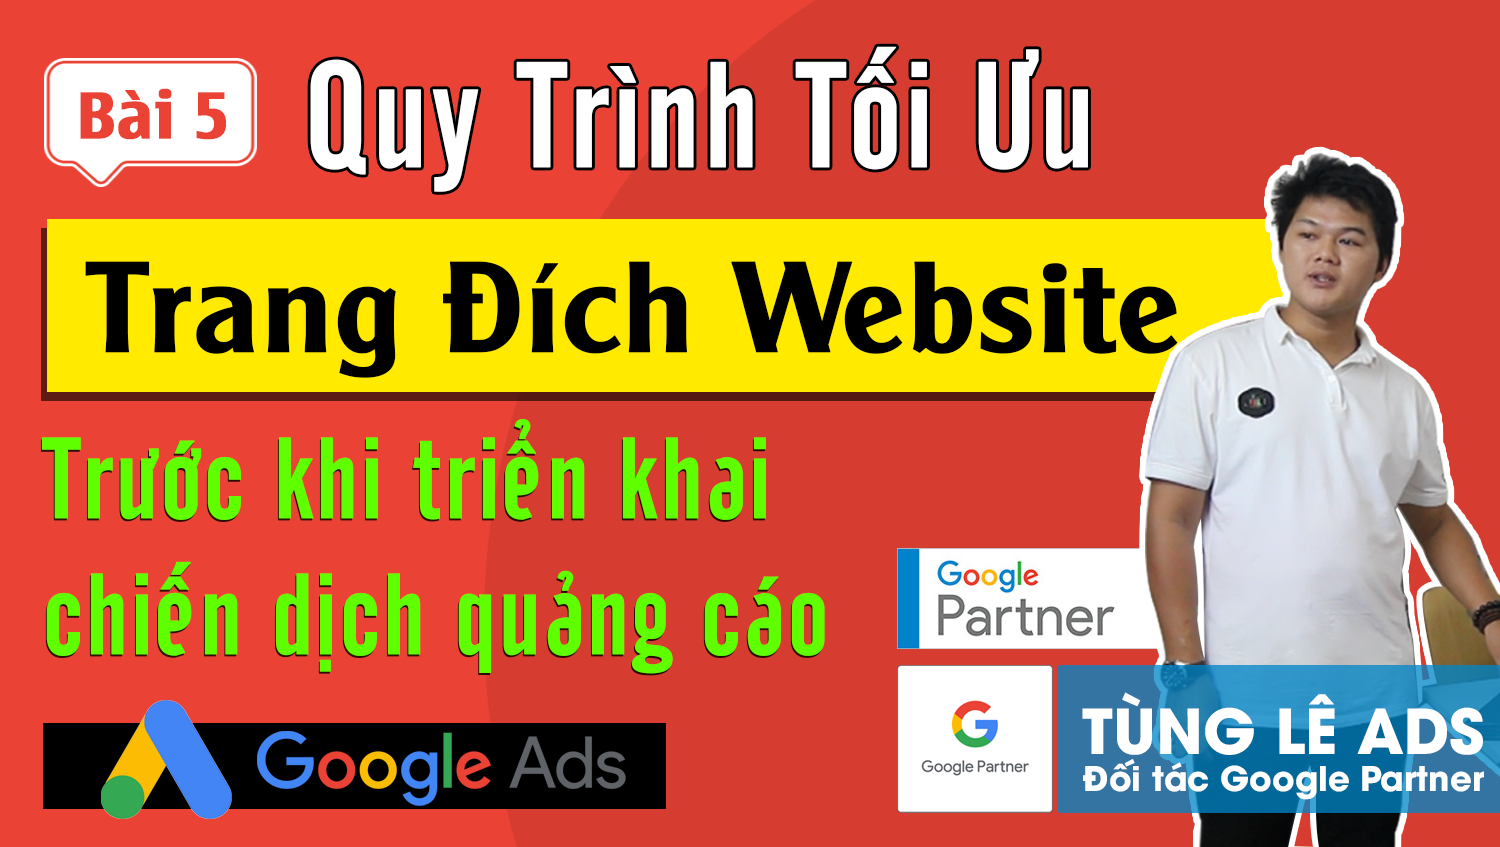 Các bước tối ưu trang đích website trước khi triển khai chiến dịch quảng cáo Google Ads #5